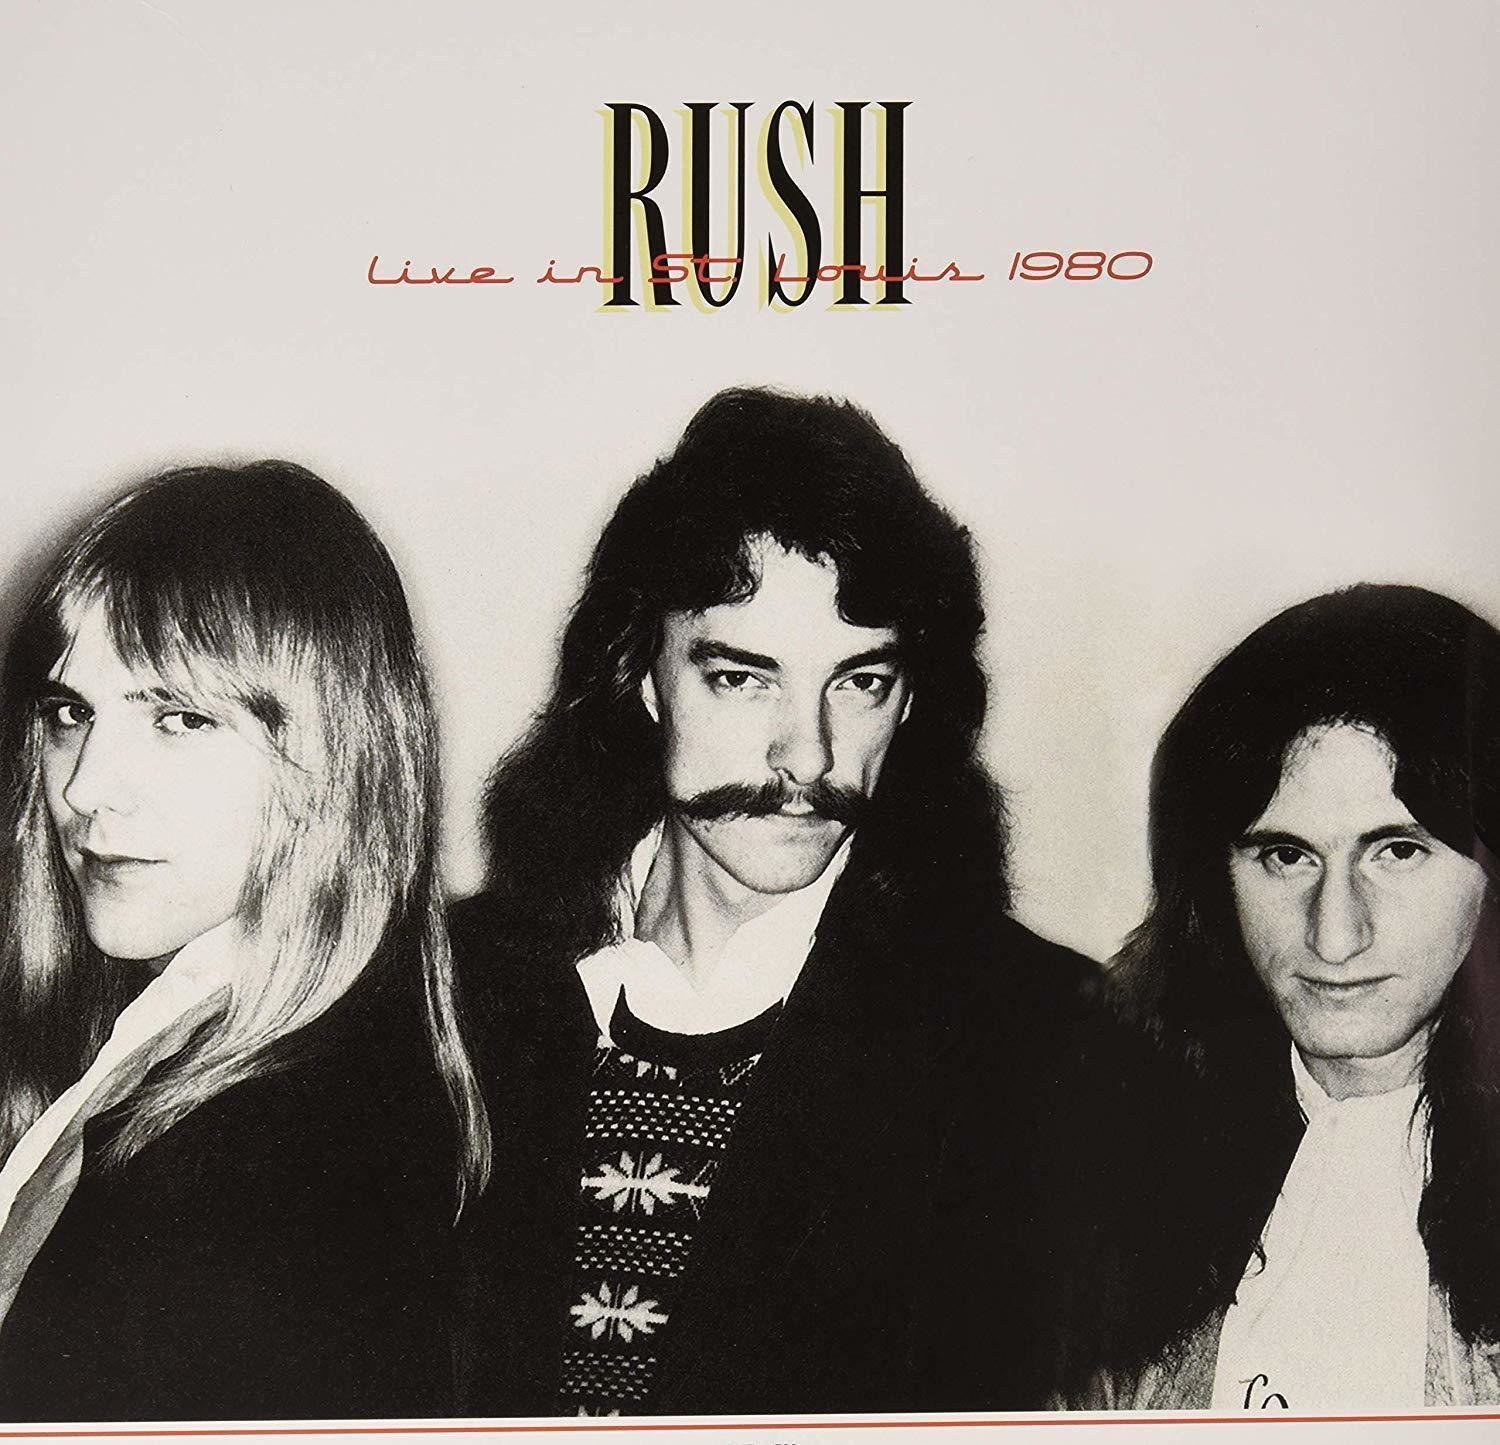 Disco de vinil Rush - Live In St. Louis 1980 (2 LP)